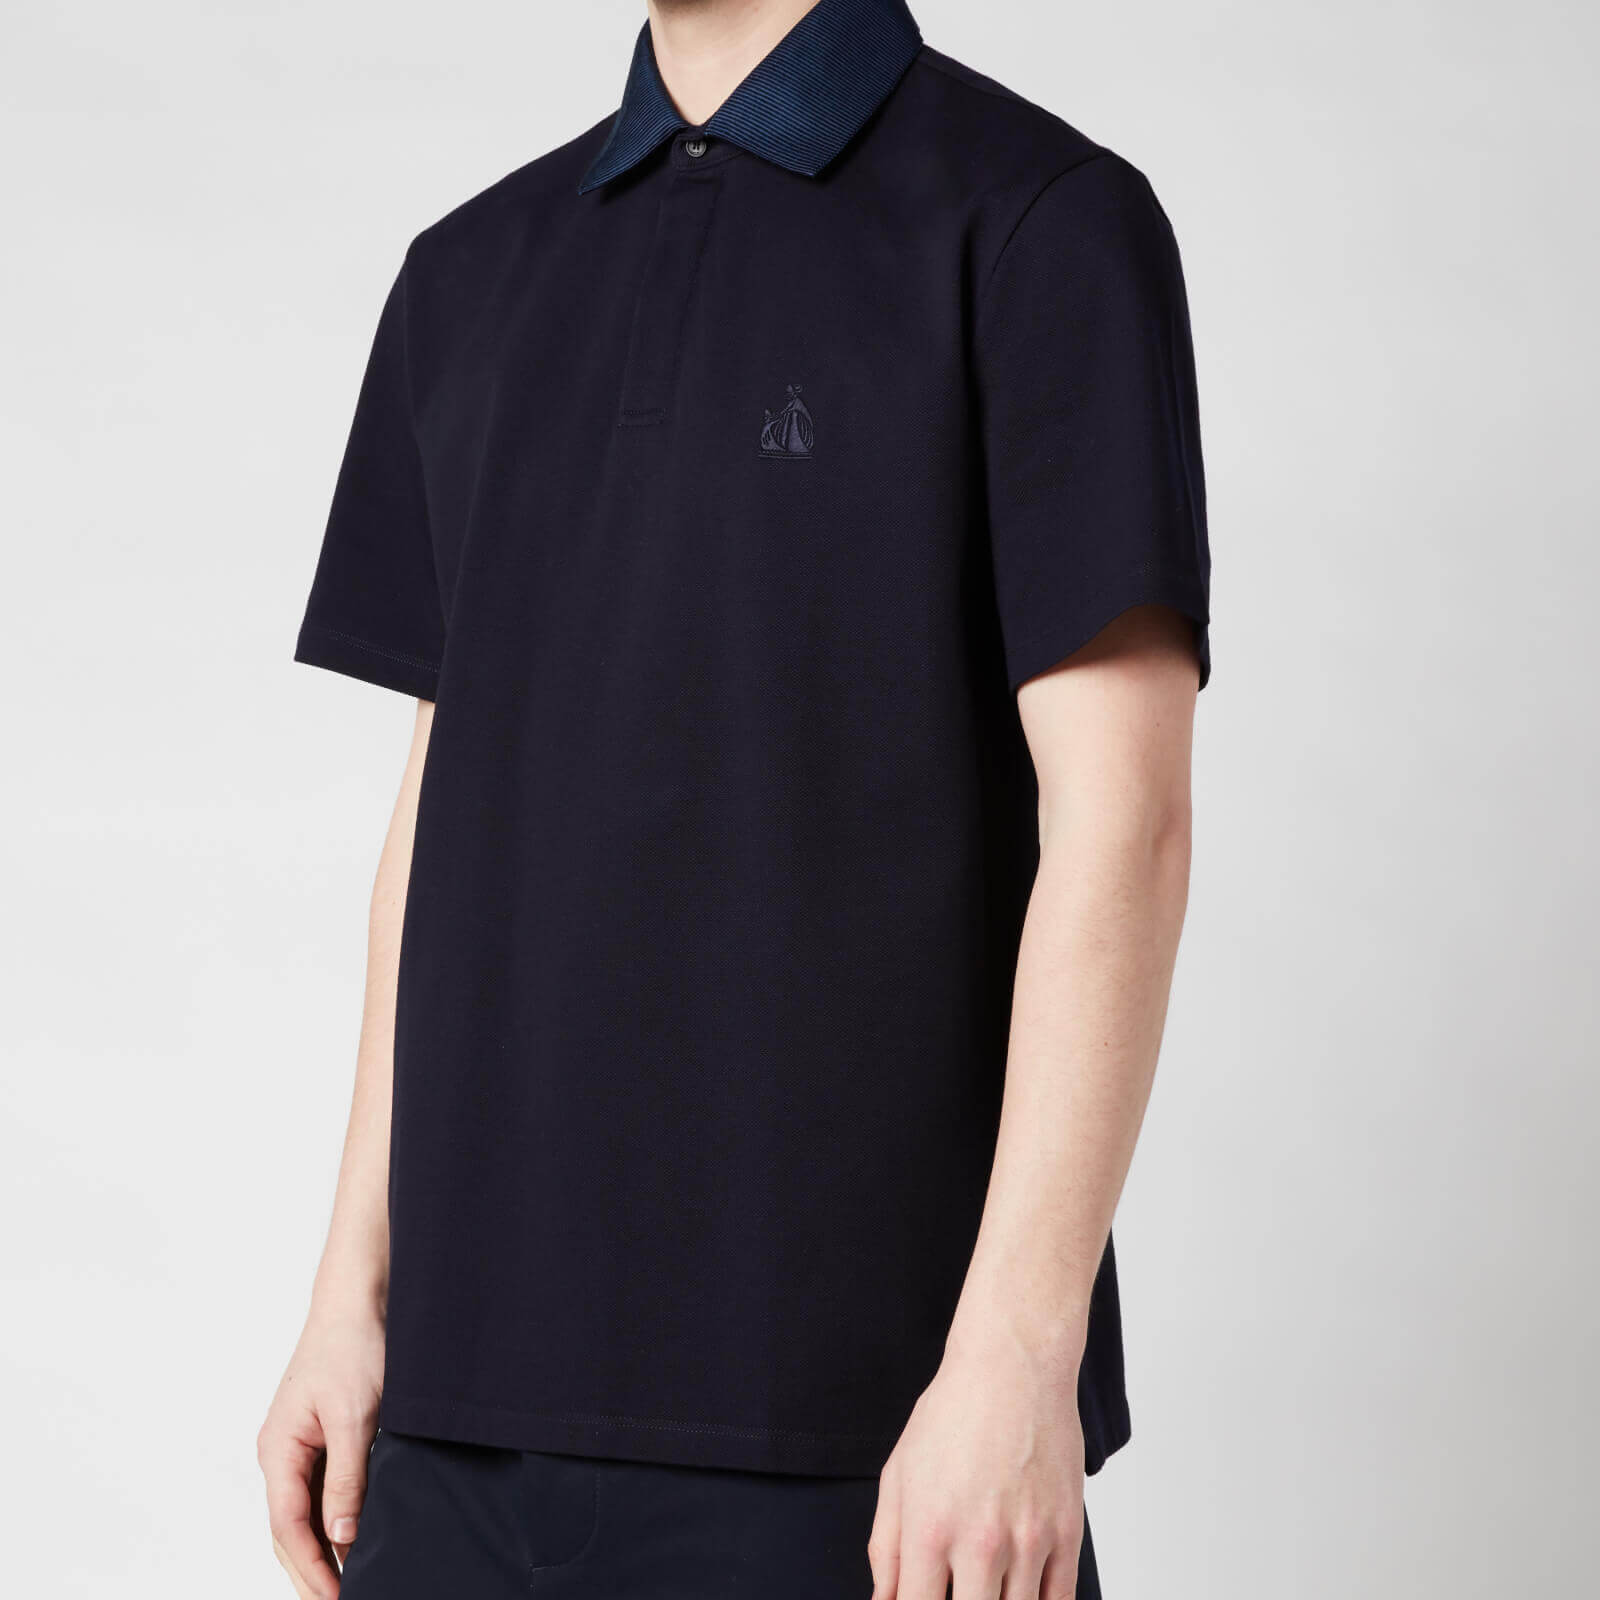 Lanvin Men's Contrast Collar Polo Shirt - Navy Blue - S